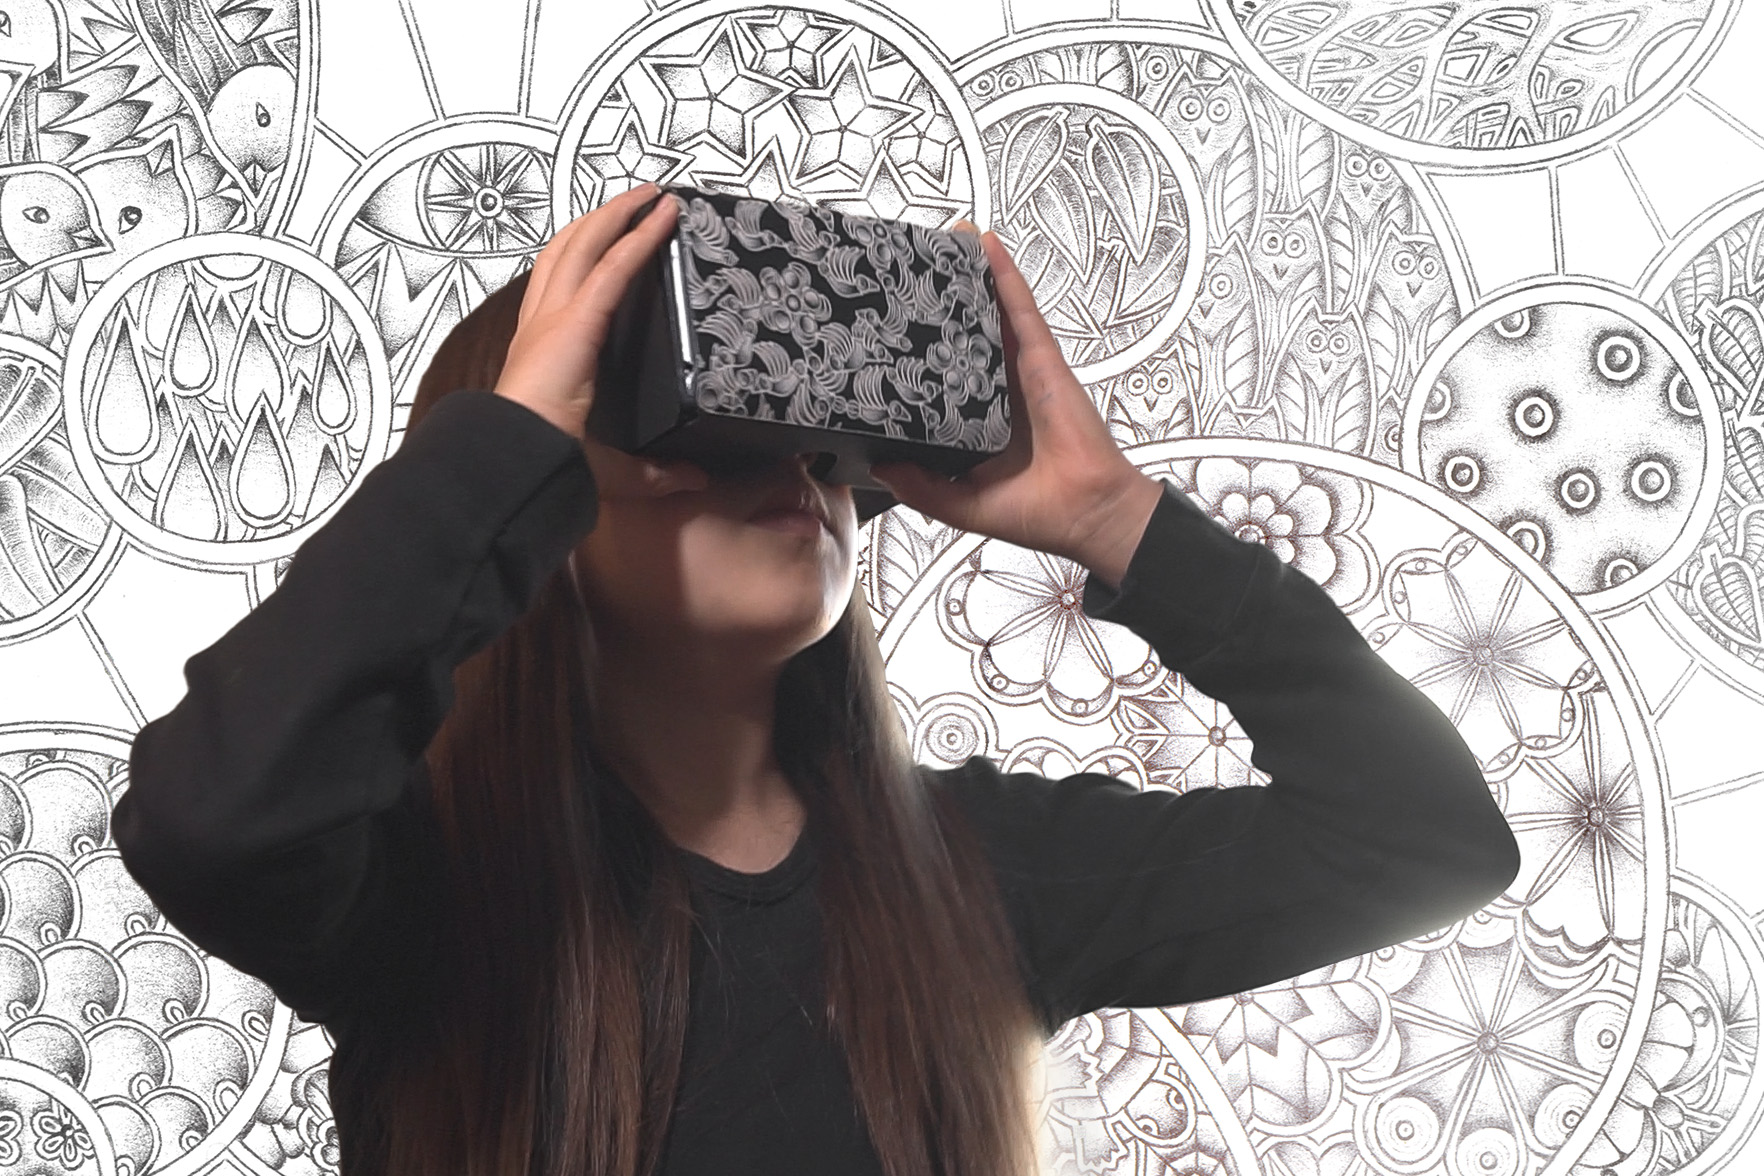 Inklusion via Virtual Reality: Bezirk fördert innovatives Projekt